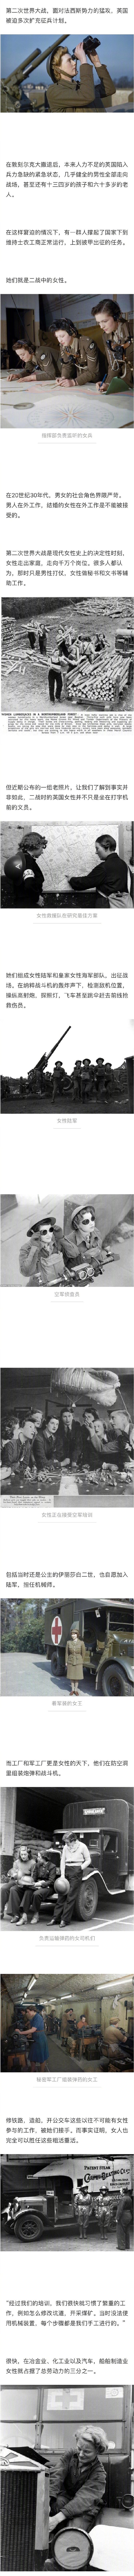 一组二战老照片，揭露了一个贡献被极大低估的群体——女性。她们是飞行员是炮兵，是秘密间谍也是情报信使，她们不该被遗忘…. ​​​​